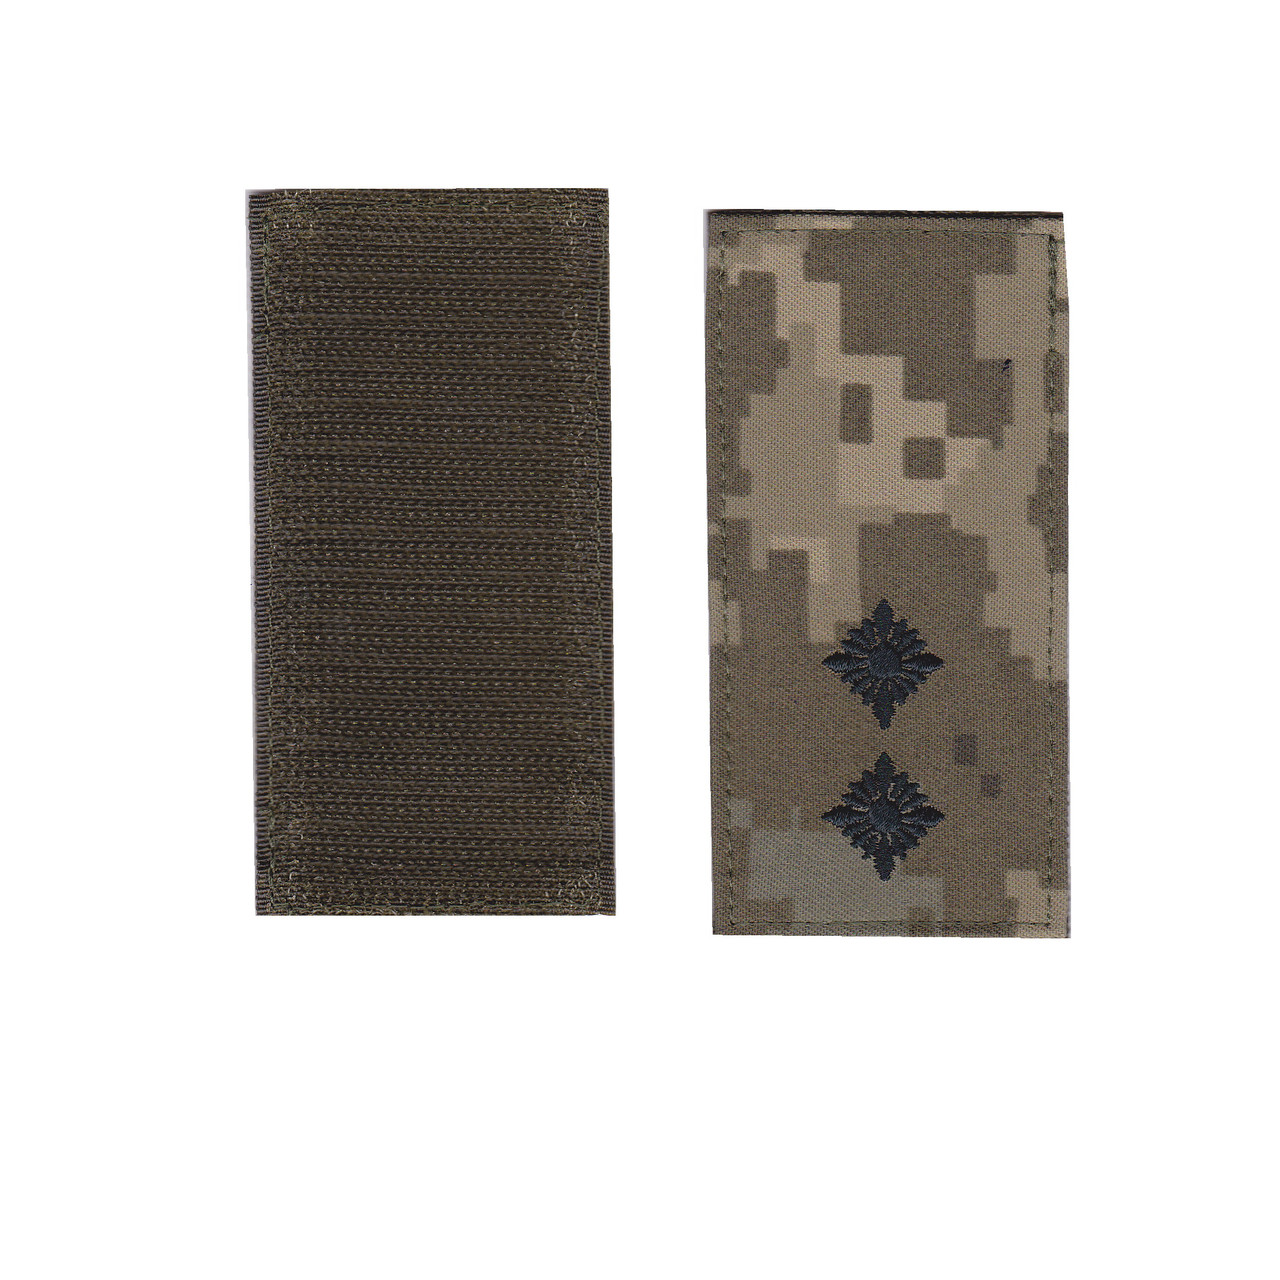 Погон лейтенанта військовий / армійський шеврон ЗСУ, чорний колір на пікселі. 10 см * 5 см